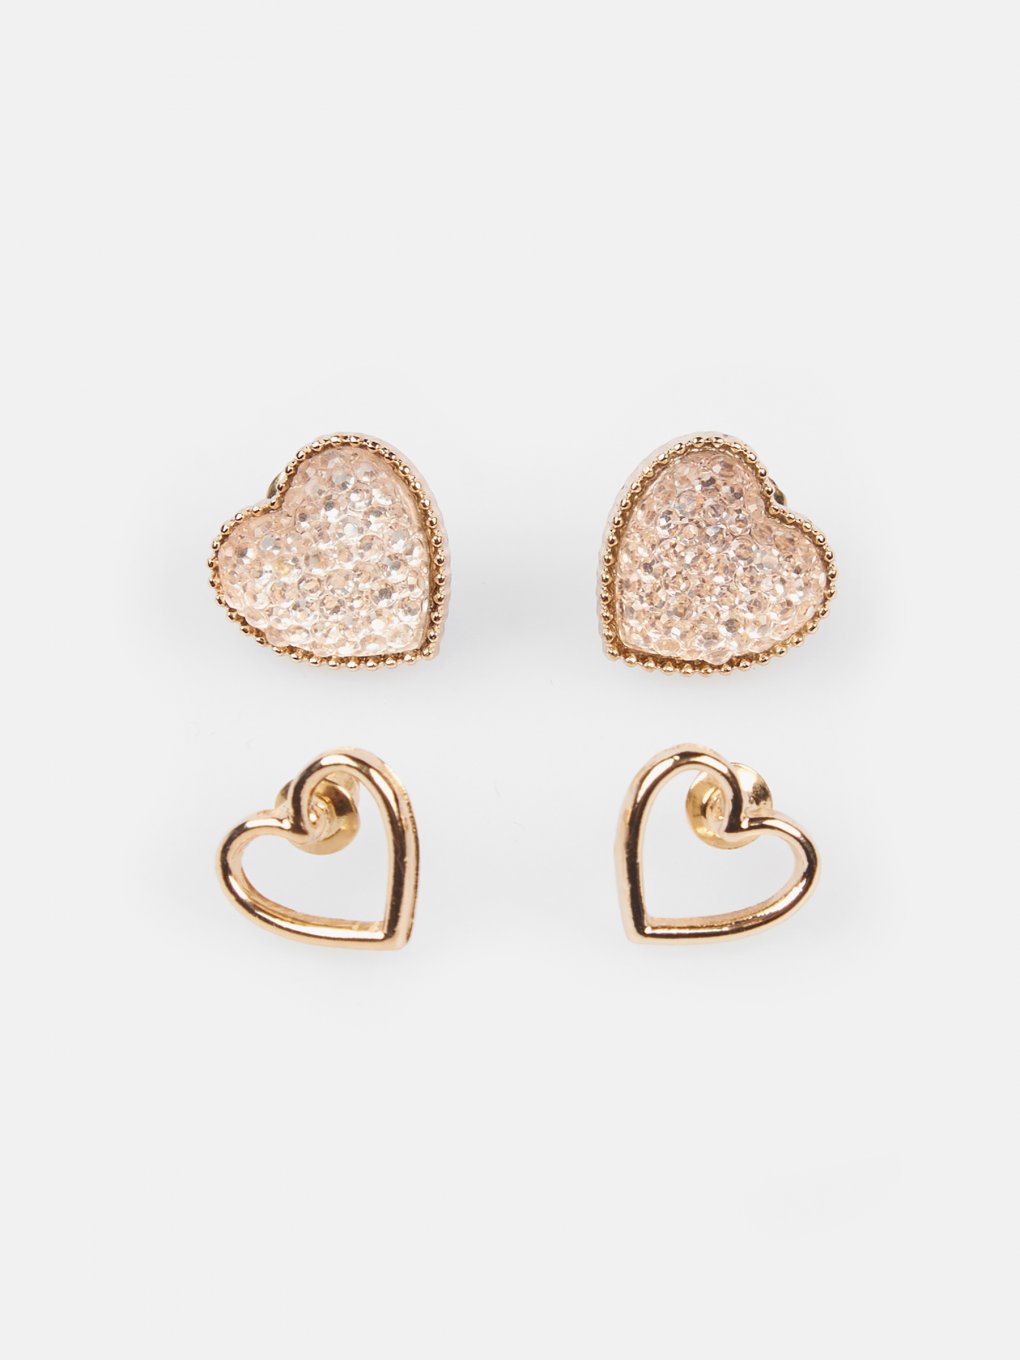 2 pair earring set